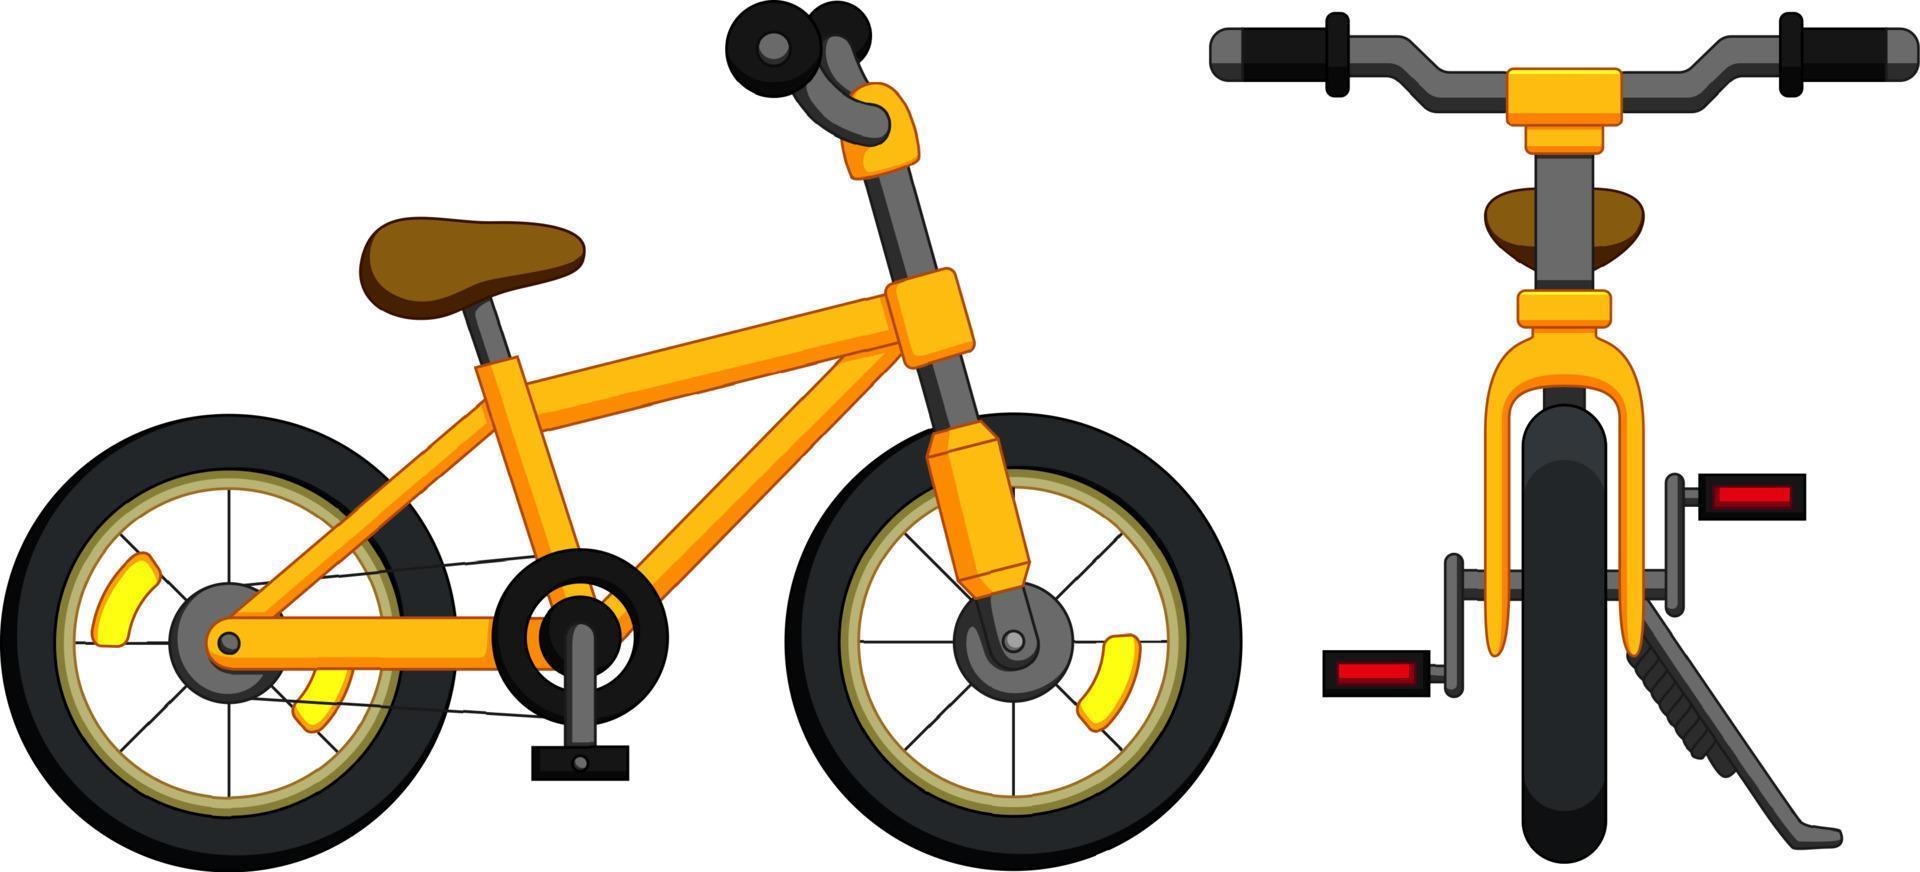 vélo avec cadre jaune vecteur